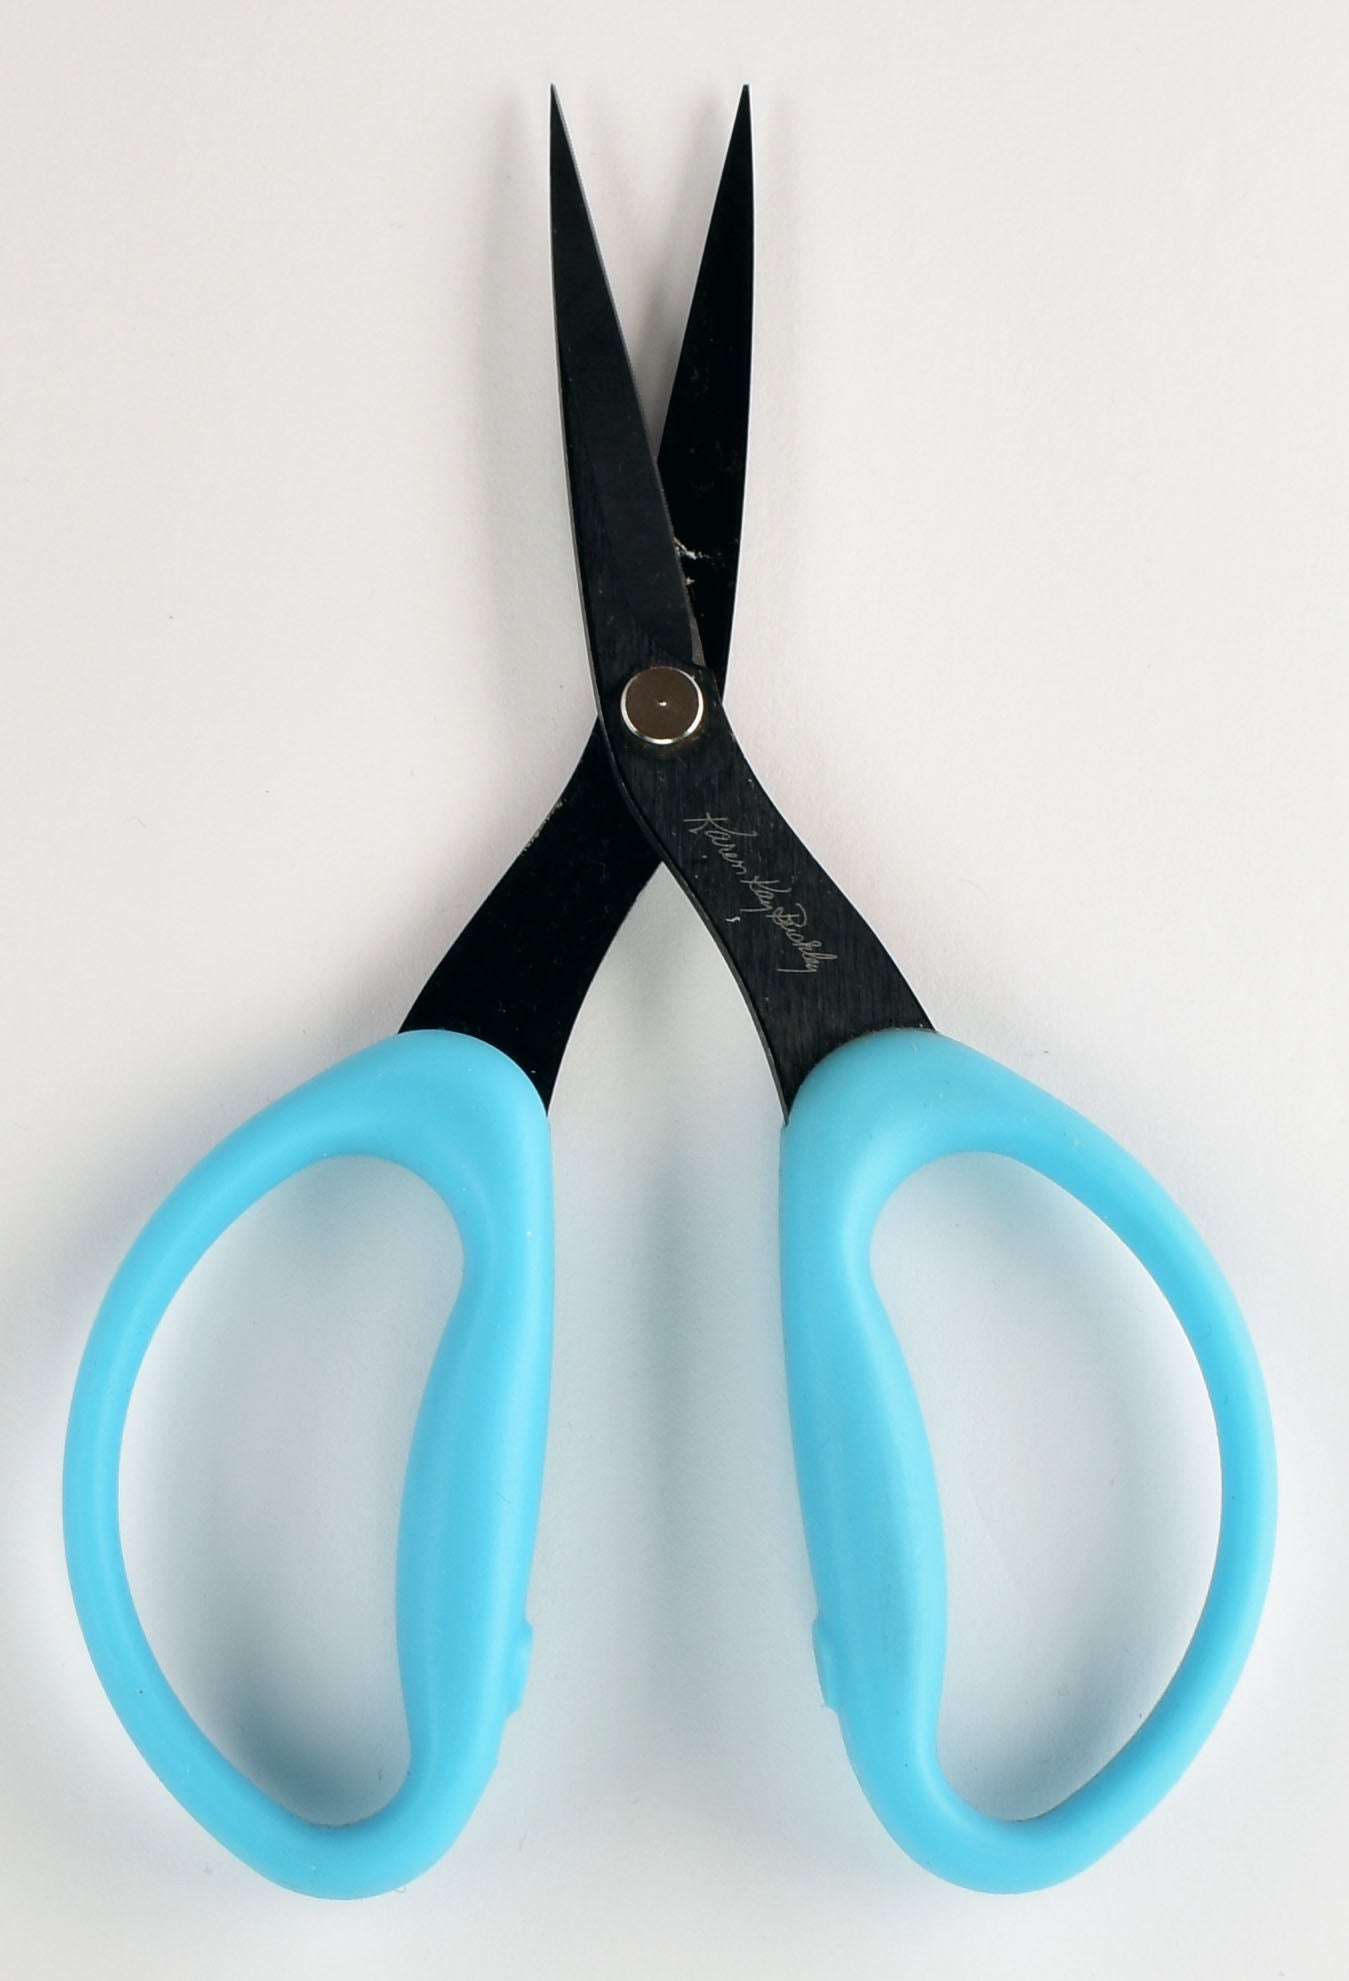 Karen Kay Buckley's Perfect Scissors - Medium